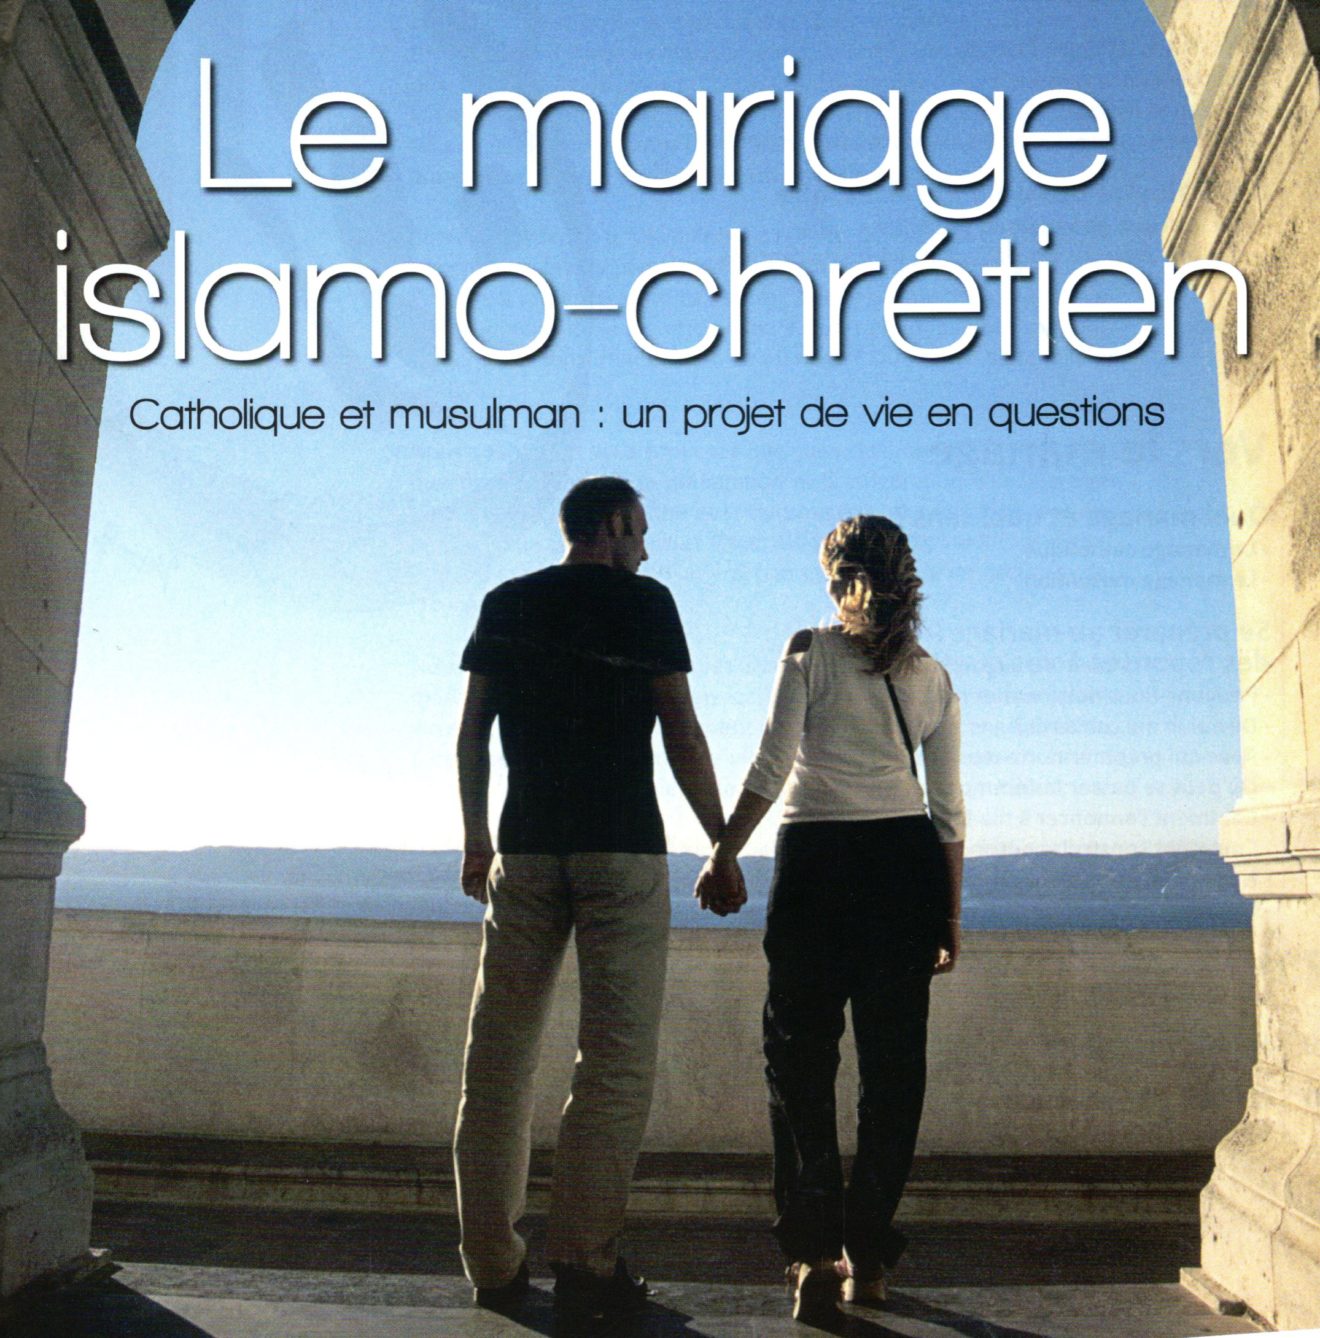 Dîner-rencontre pour les couples Islamo-chrétiens, le samedi 21 mars